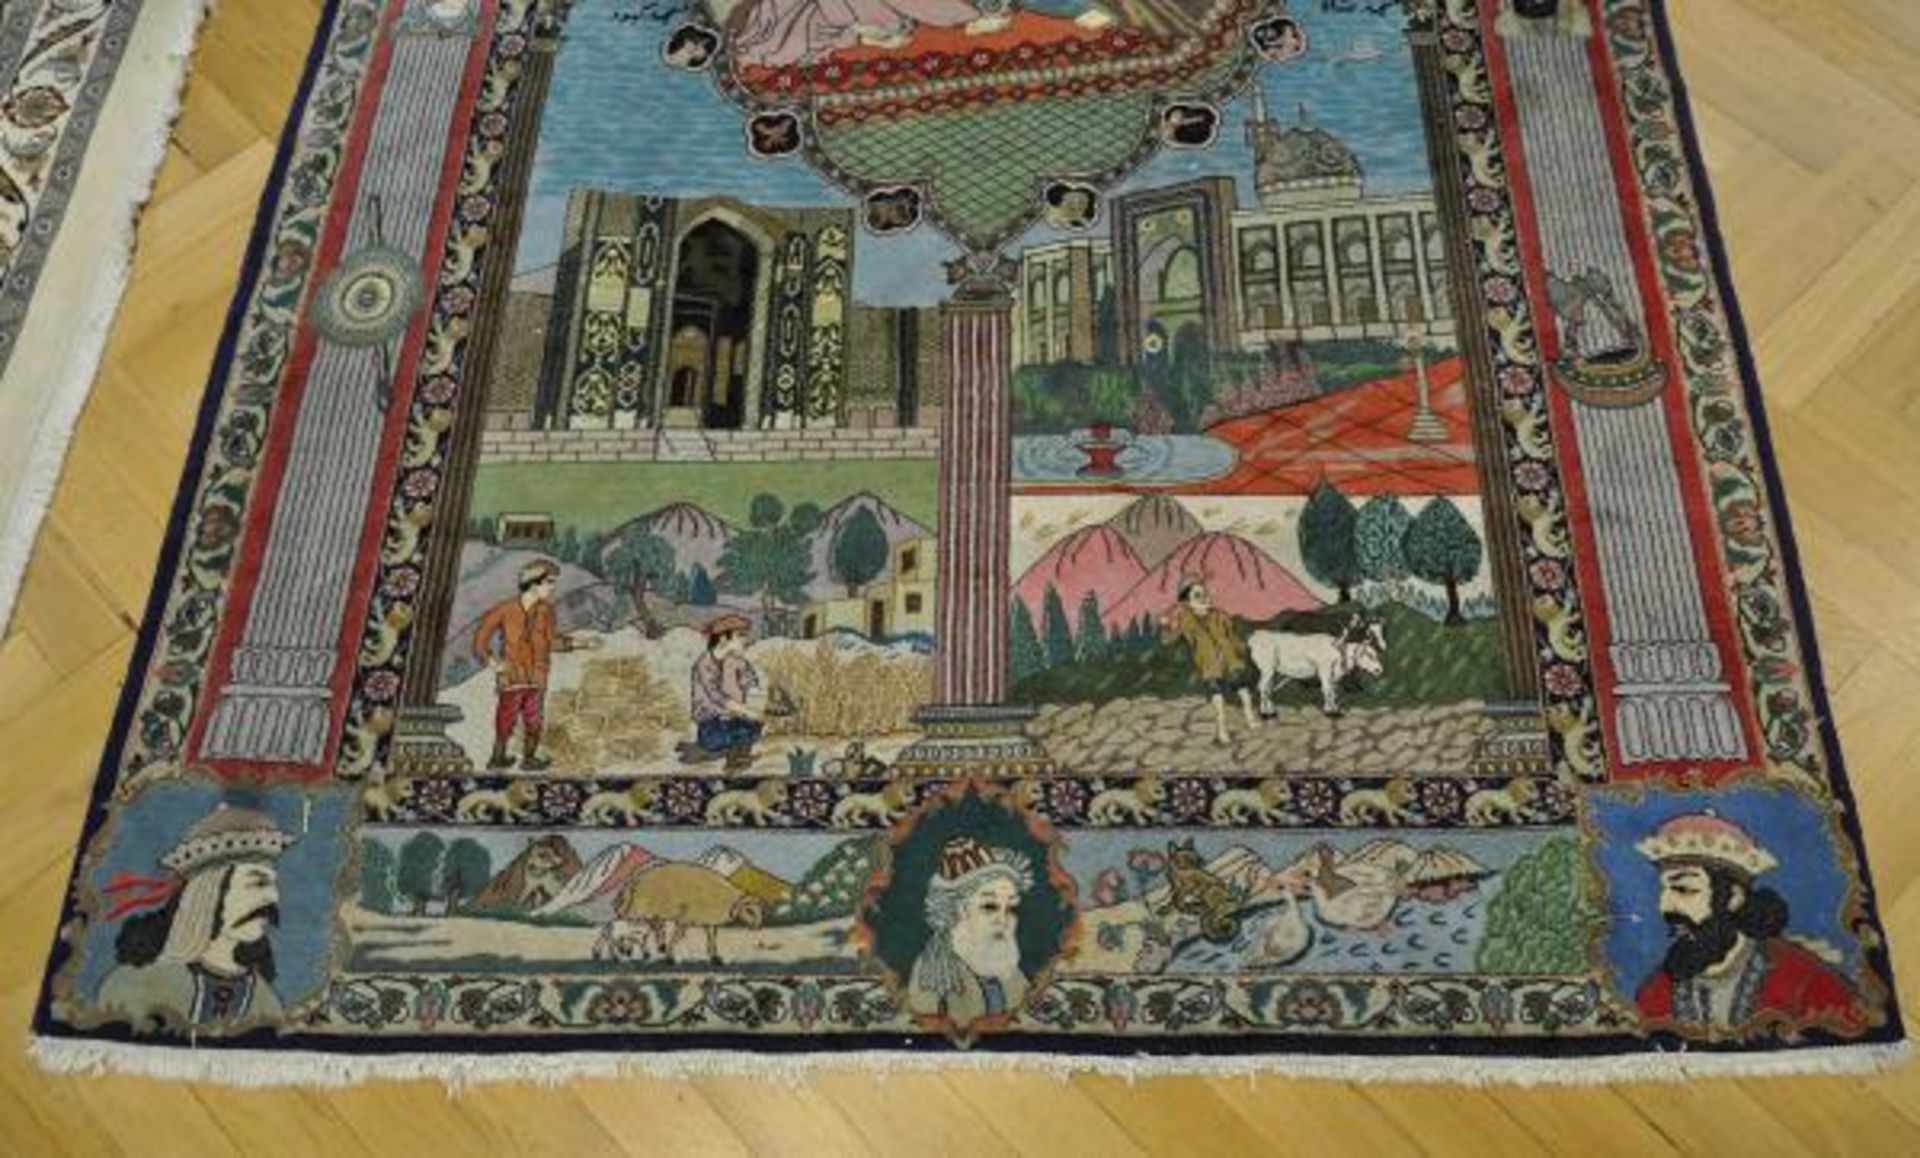 TÄBRIS Persien, Geschichte der Vier JAhreszeiten mit Propheten, 260x160cm, gut erhalten - Image 2 of 3